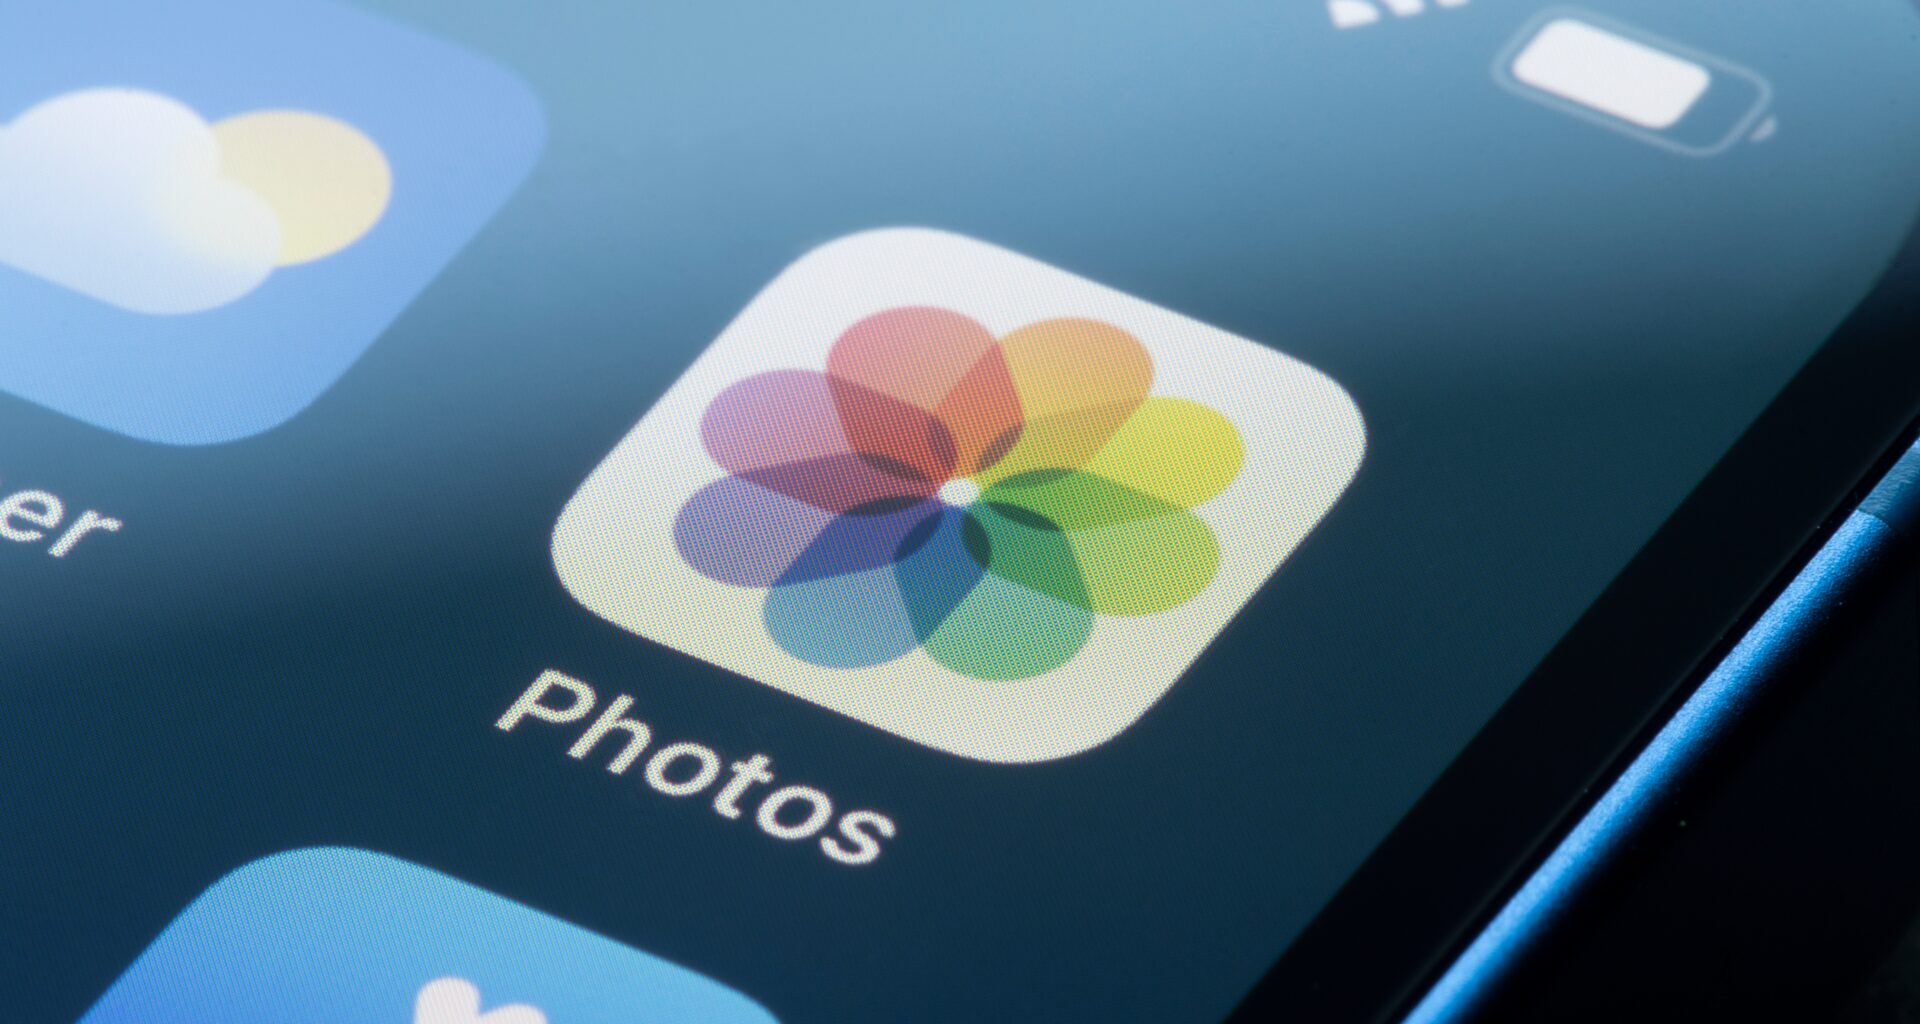 App Fotos no iPhone